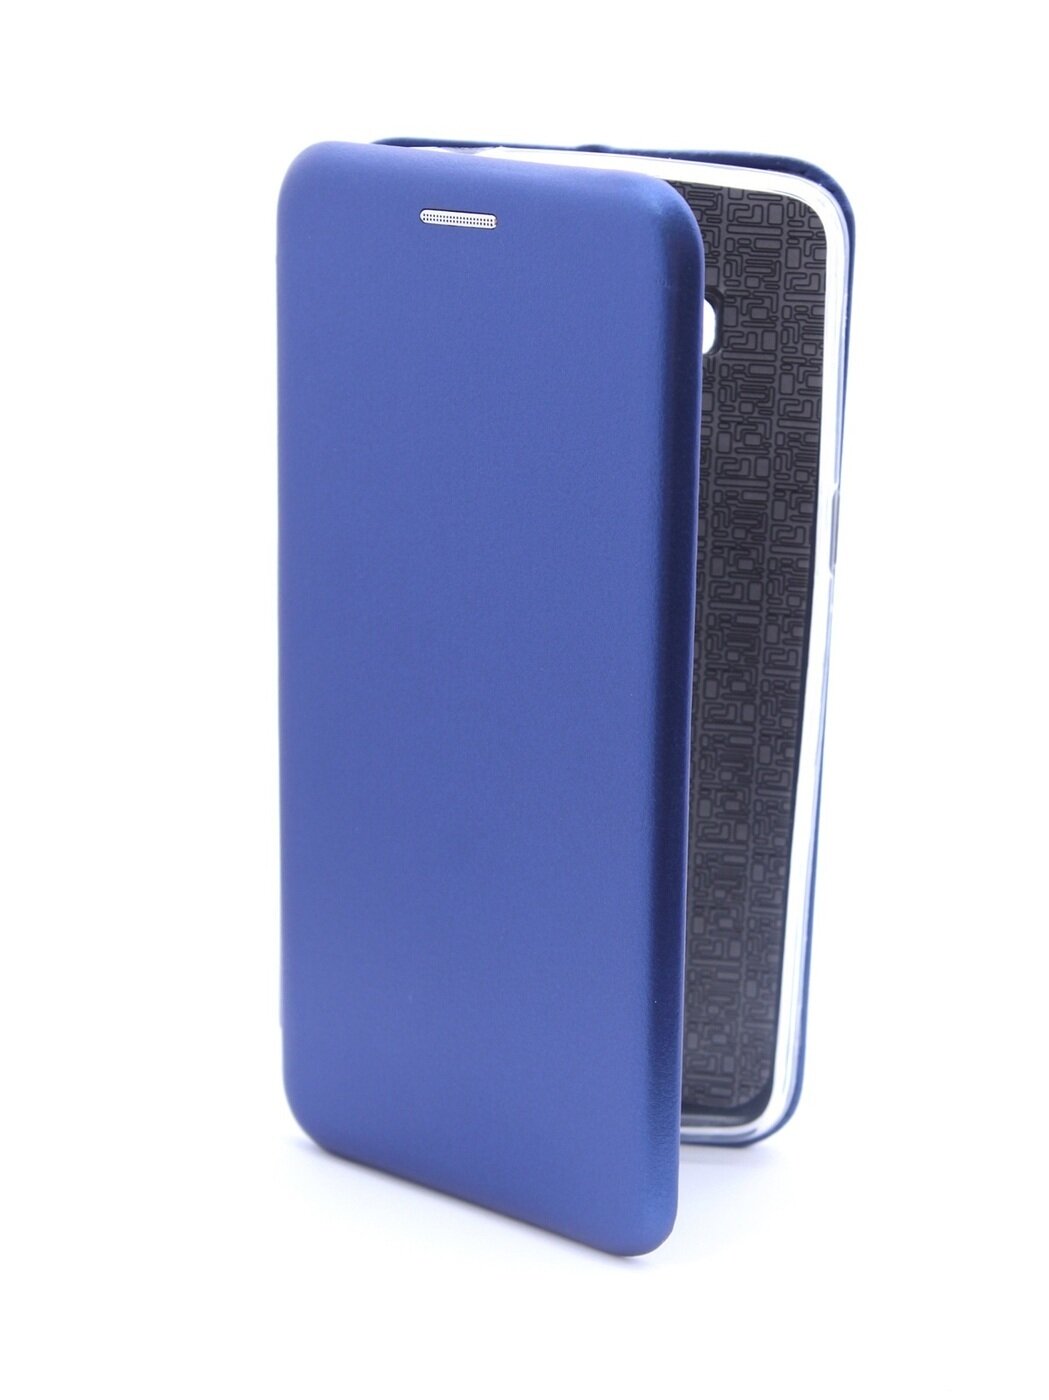 Защитный чехол книжка на телефон Samsung Galaxy J2 Prime с отделением для карт, футляр для Самсунг Галакси Джи 2 Прайм с картхолдером